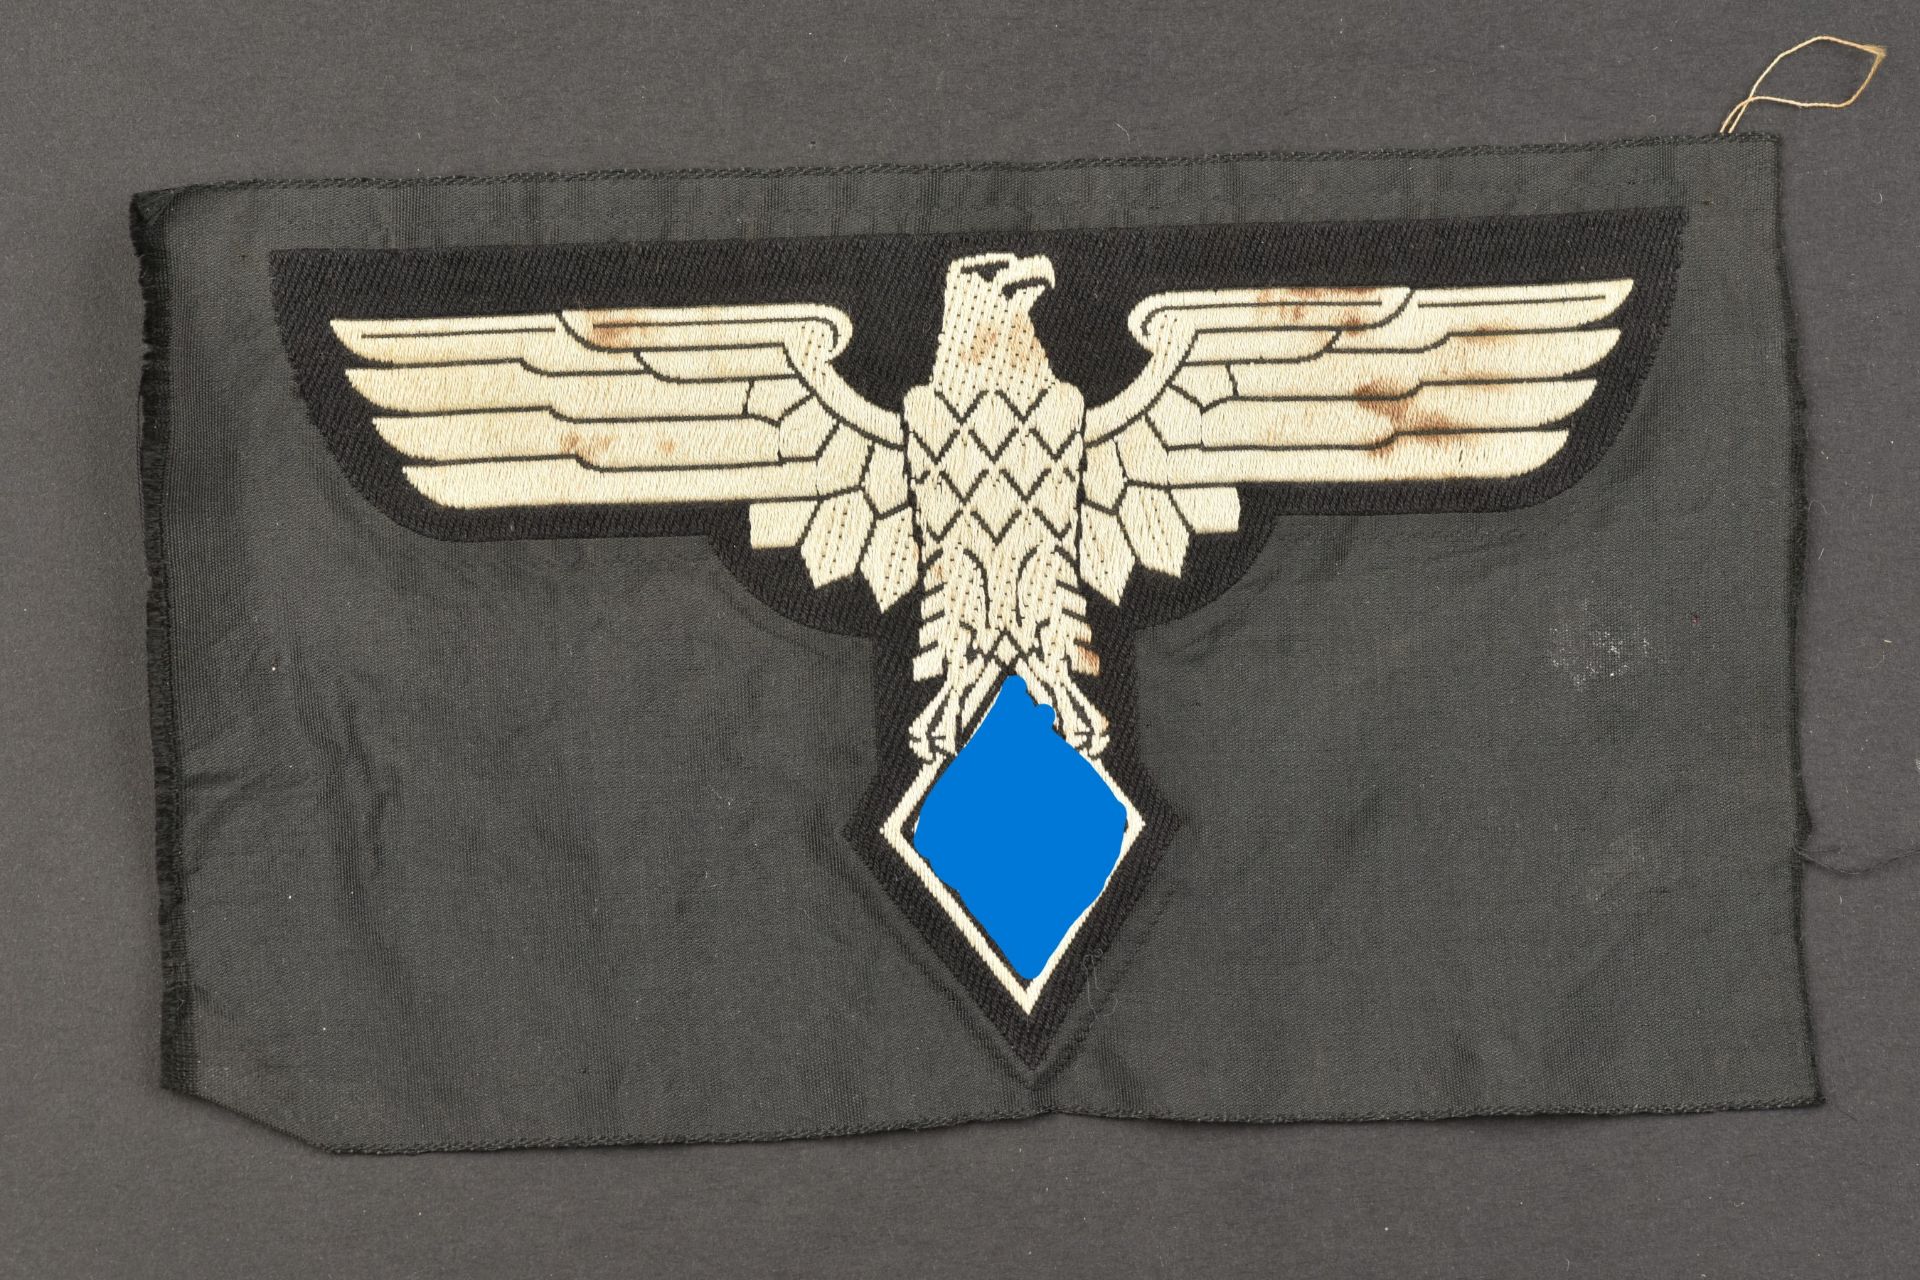 Insigne de maillot de sport Žtudiants du Reich. Reich student sports jersey badge.